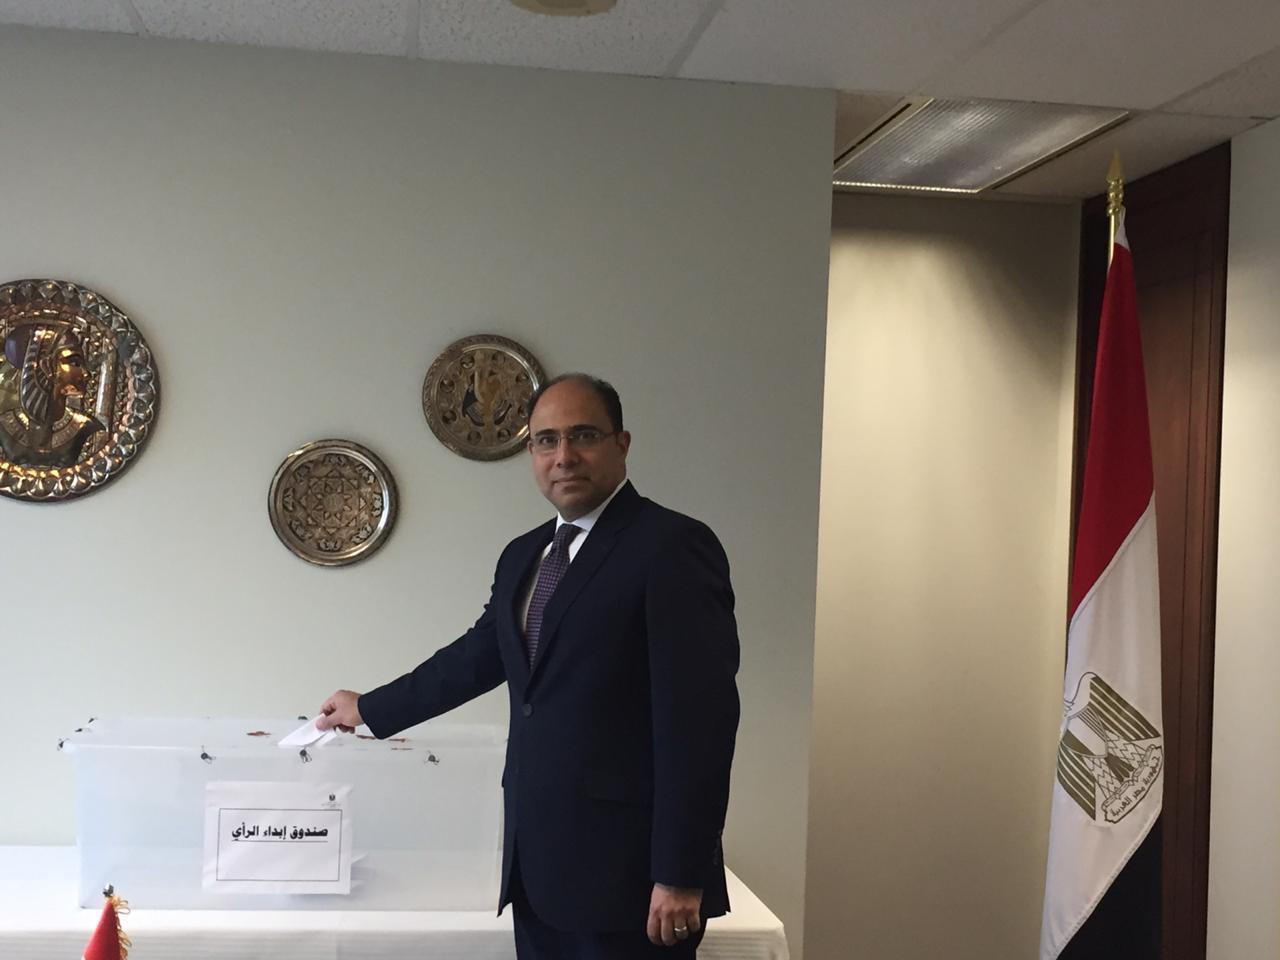   سفير مصر فى كندا يفتتح عملية الاستفتاء علي التعديلات الدستورية بمقر السفارة المصرية في أوتاوا